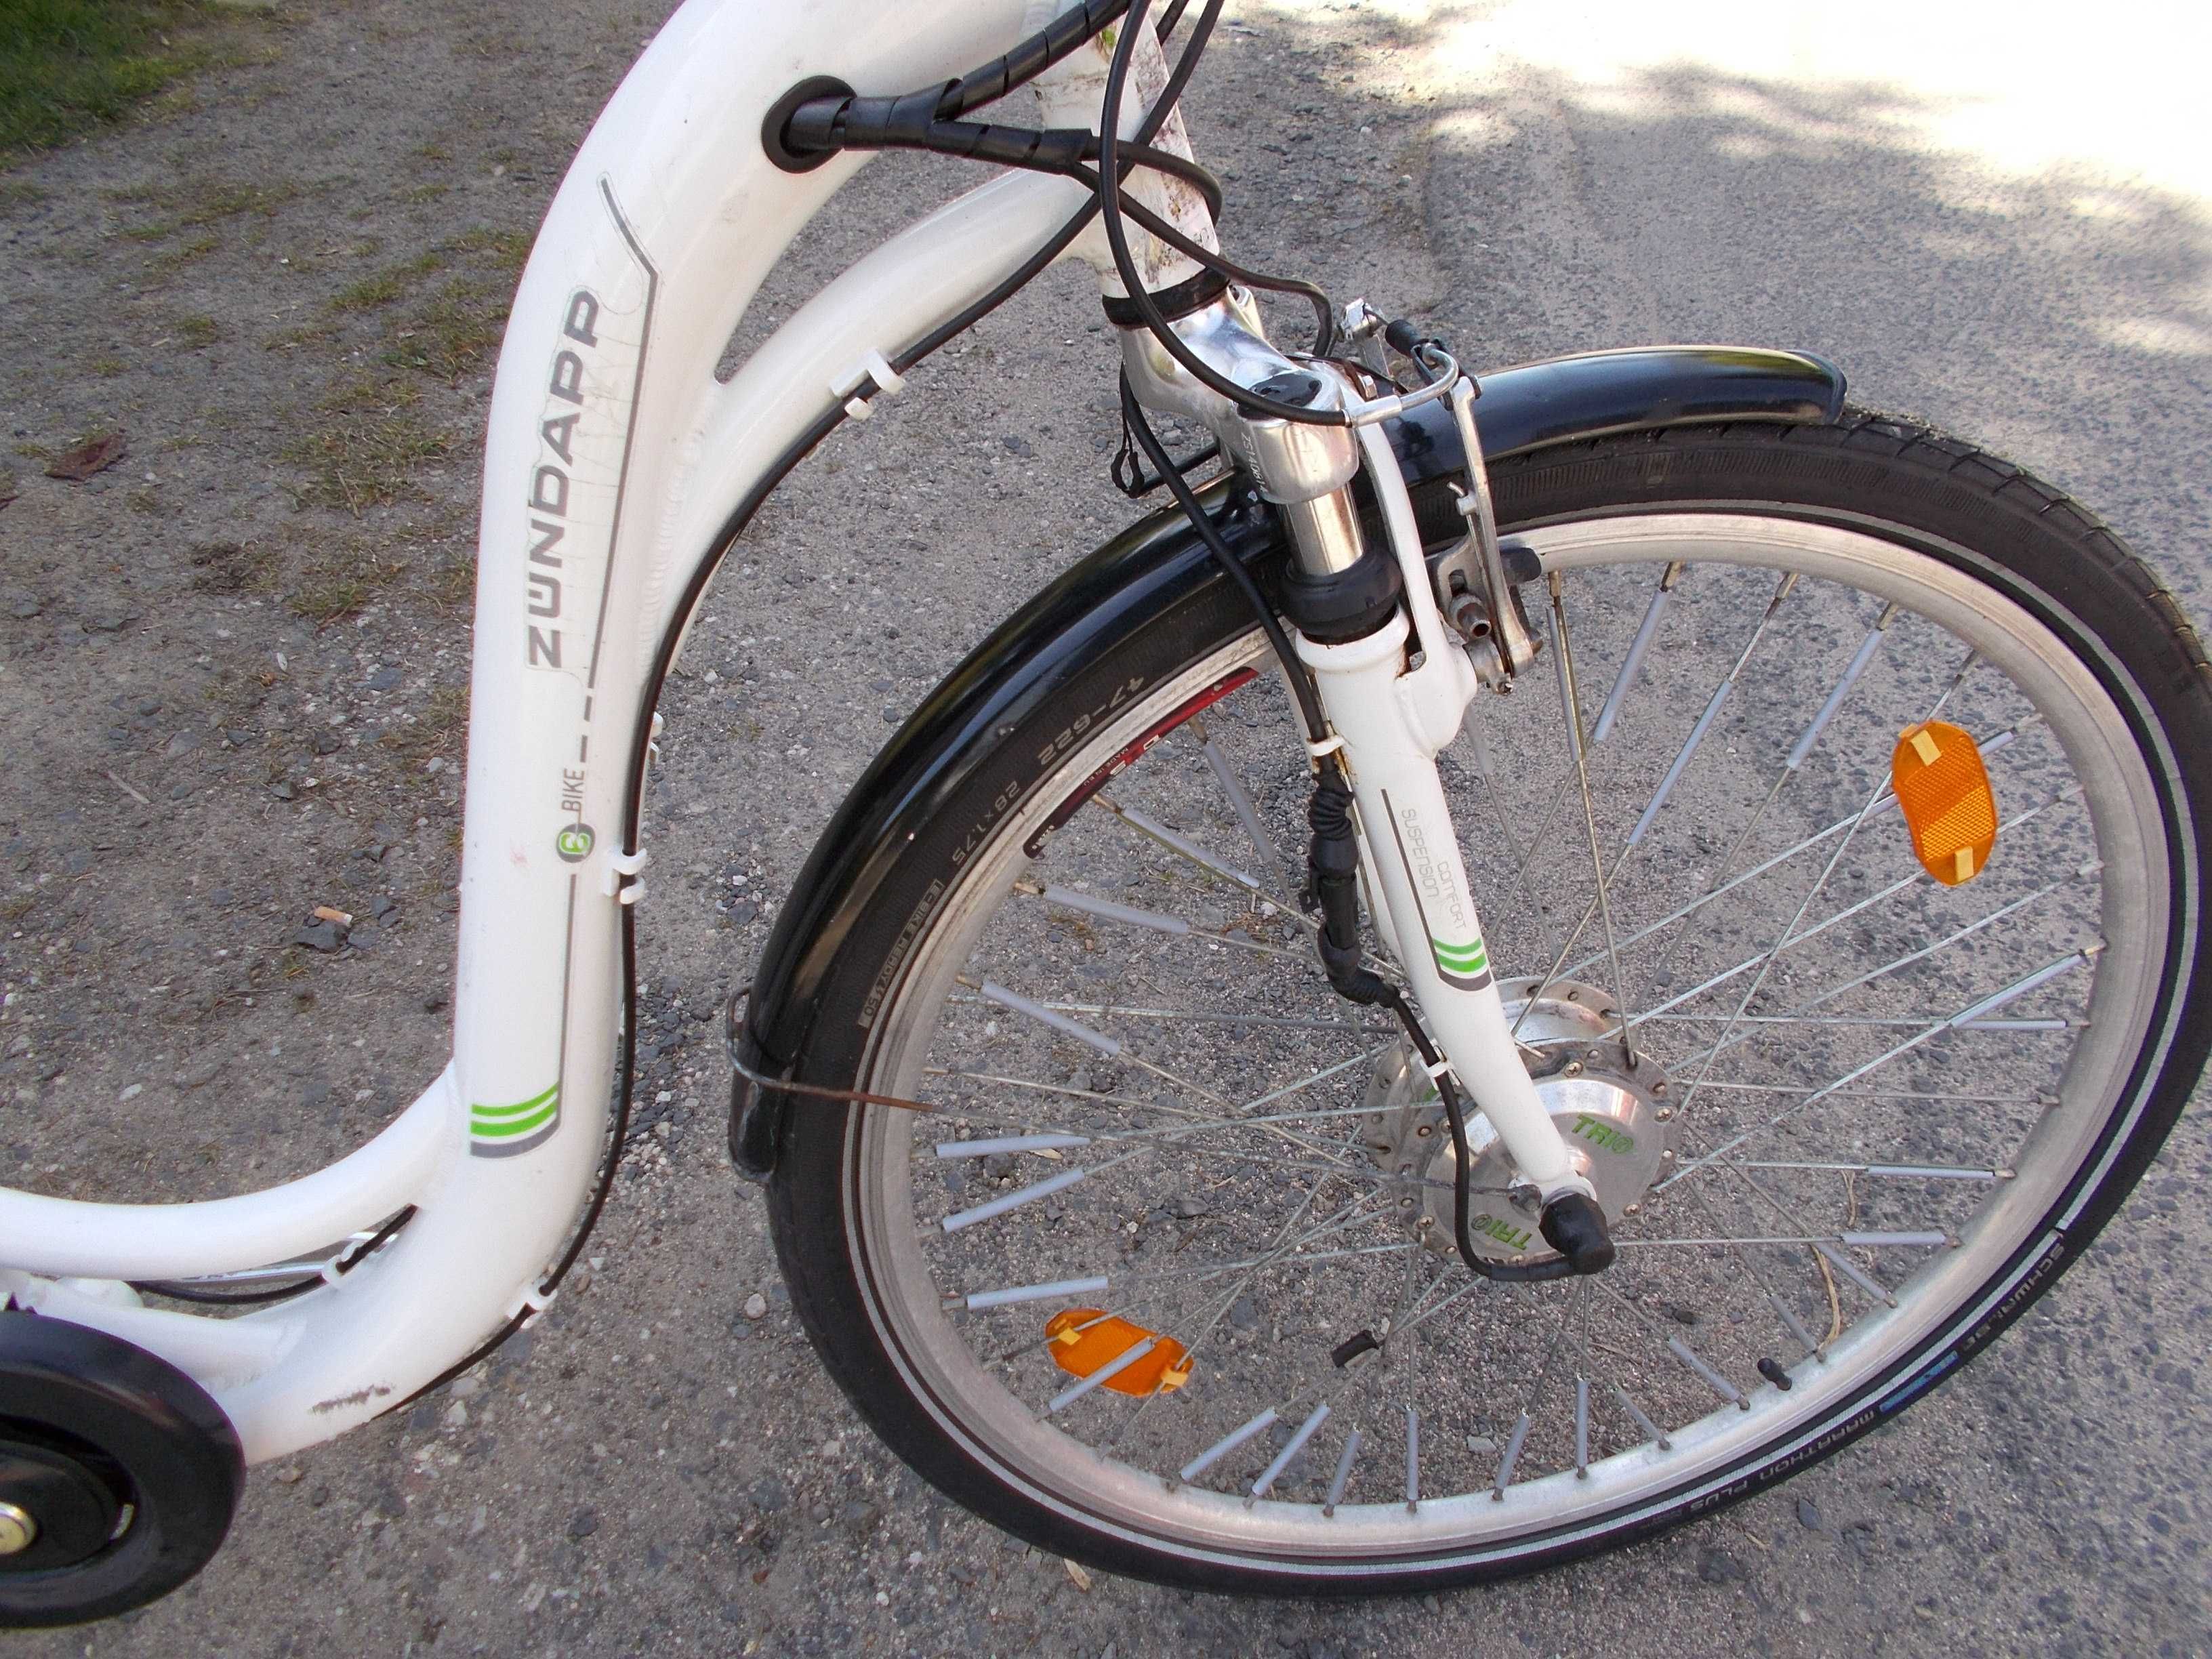 Tanie rowery -rower elektryczny Zündapp-sprawny